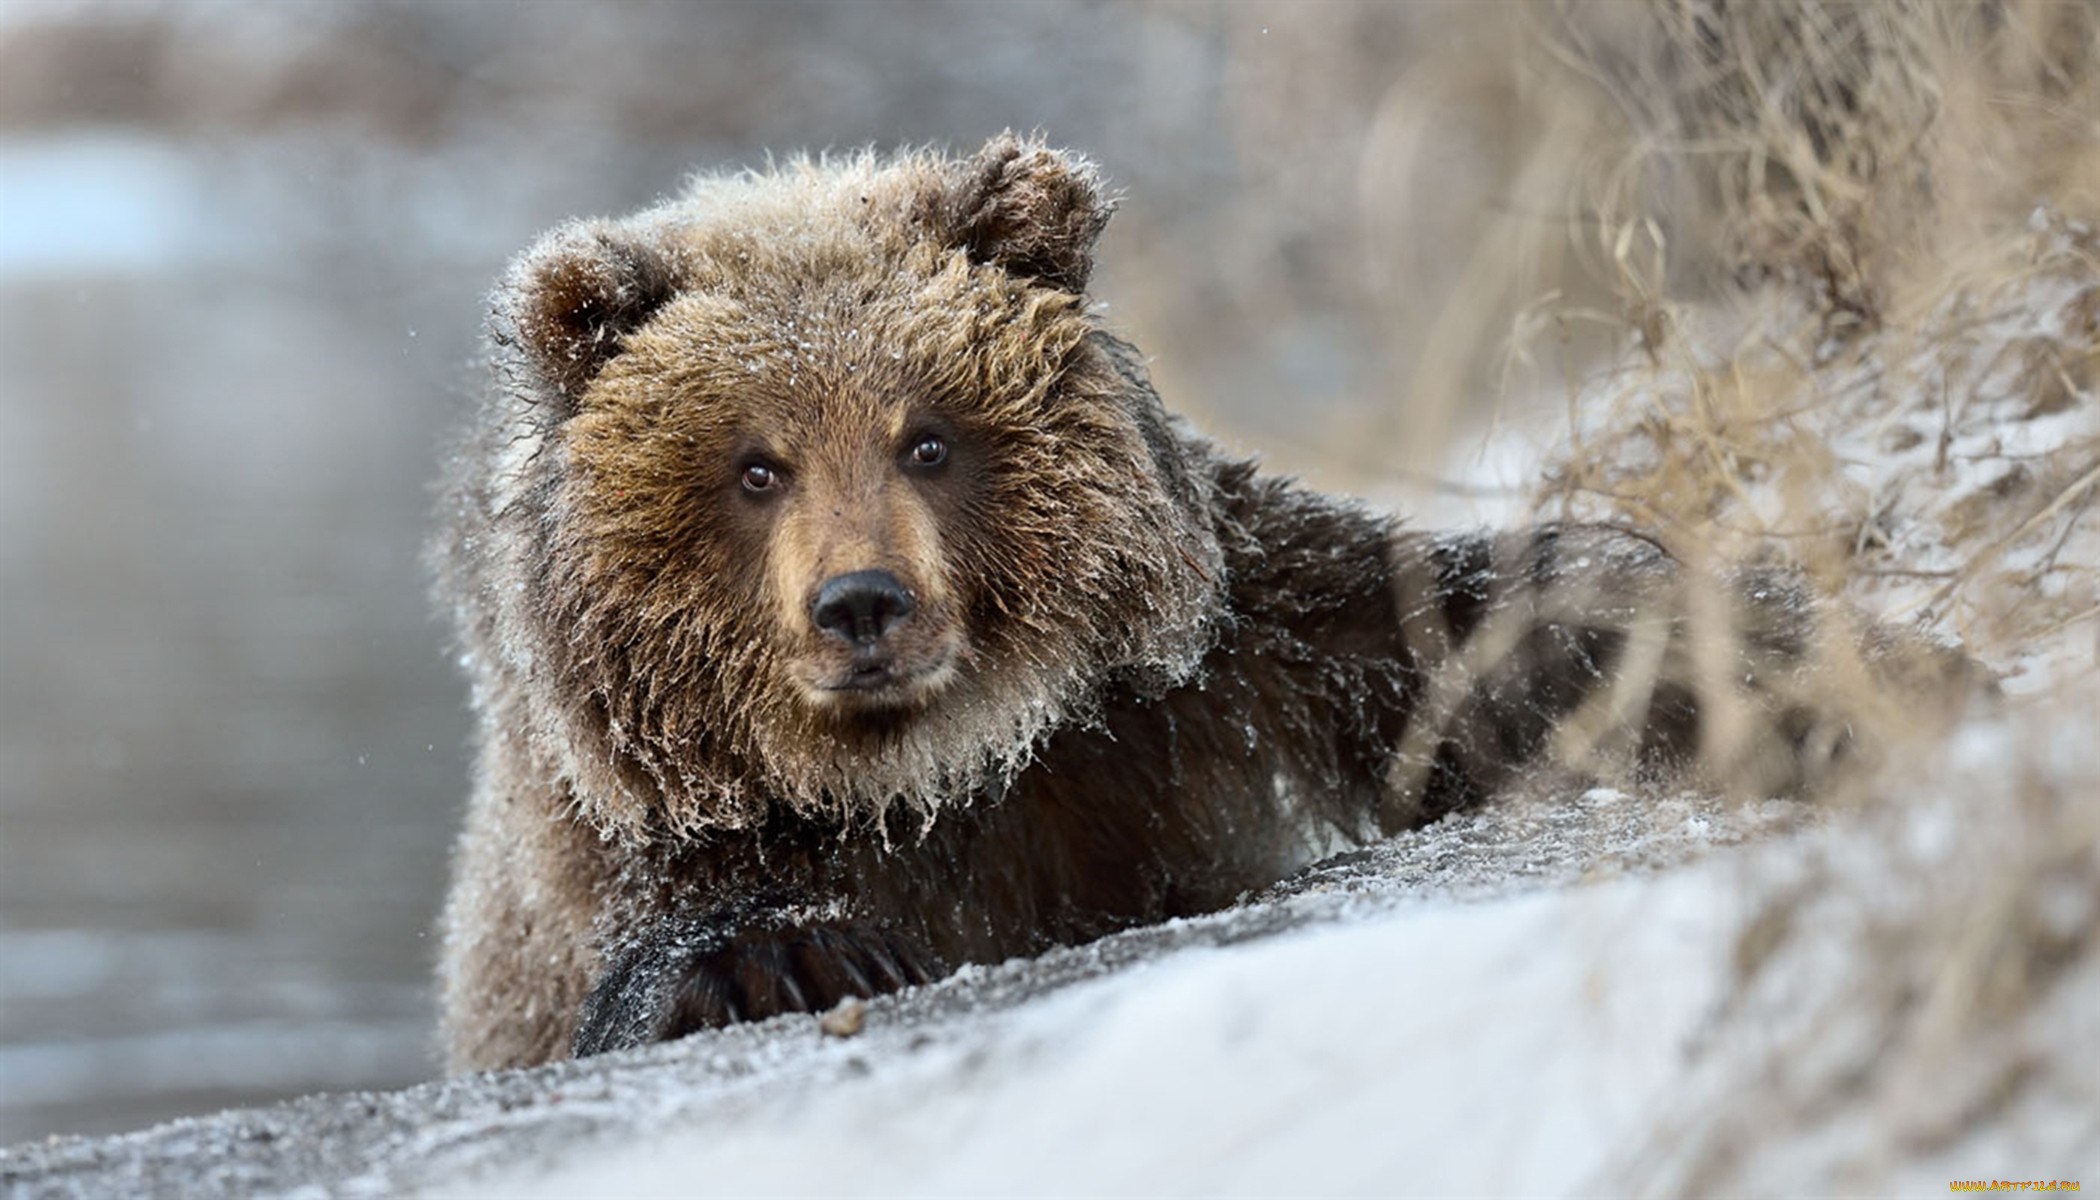 Зверь пробуждение. Бурый медведь зимой. Медведь зимой. Красивый медведь. Медведь в зимнем лесу.